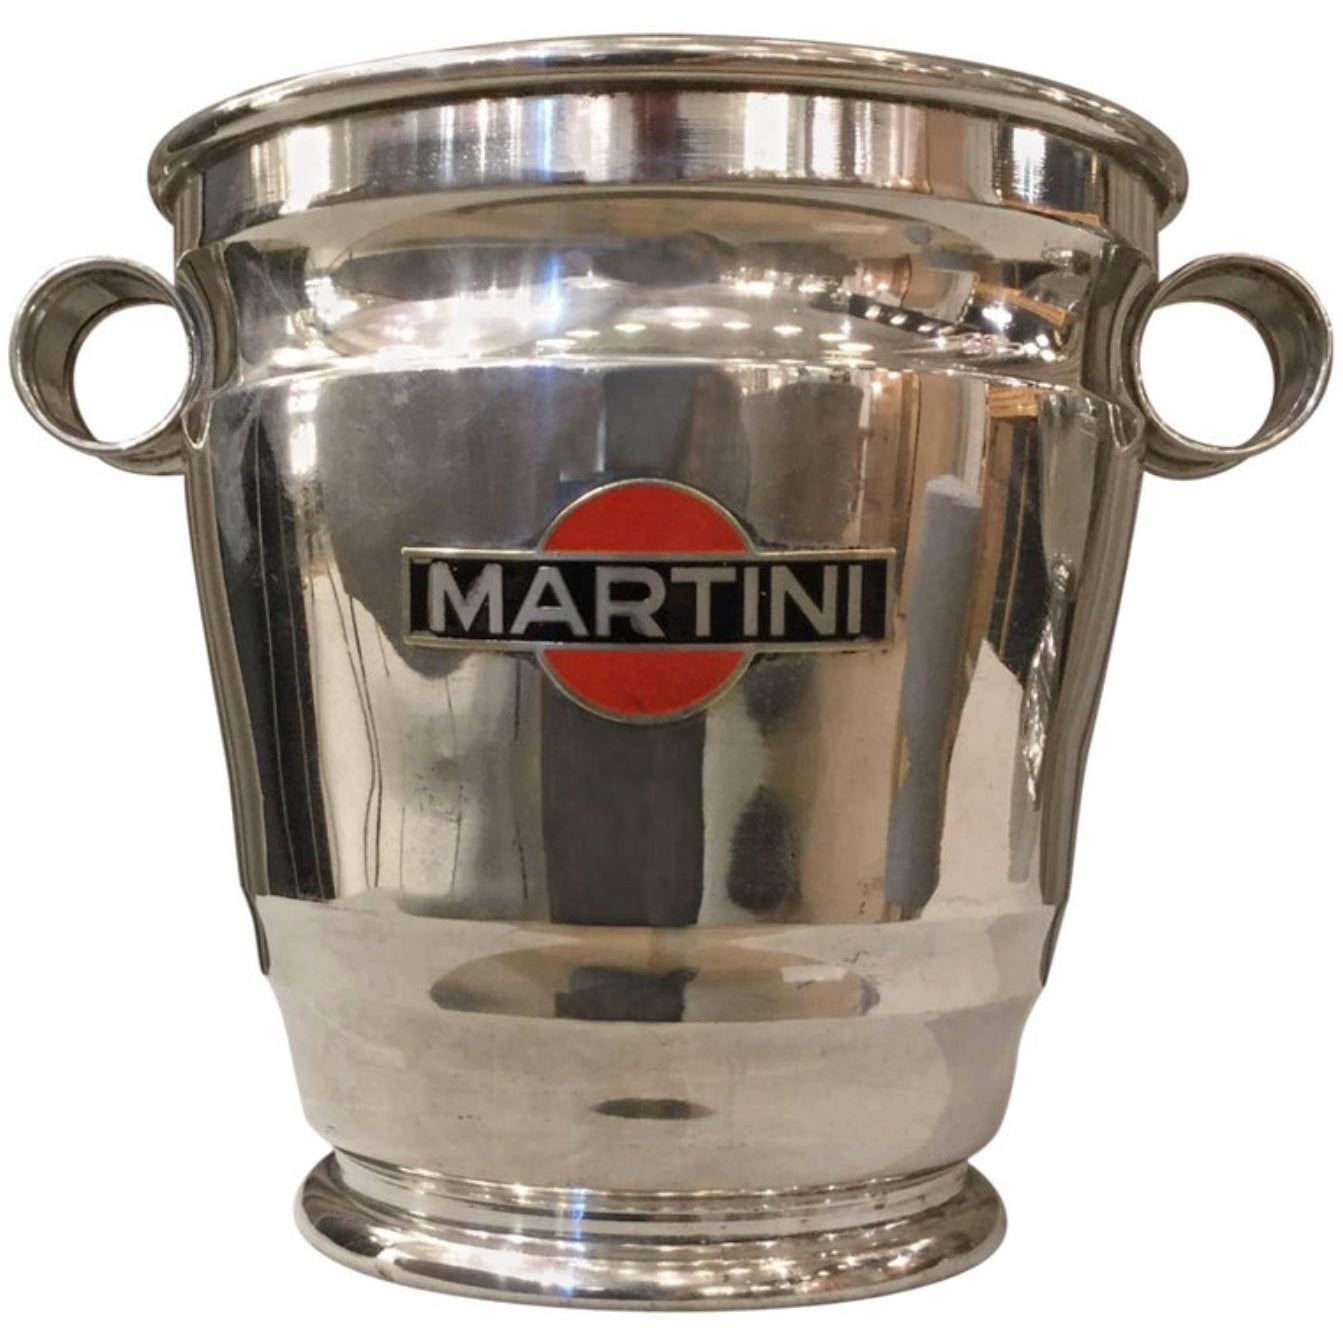 Martini-Kühler/Kühler, 1960er-Jahre